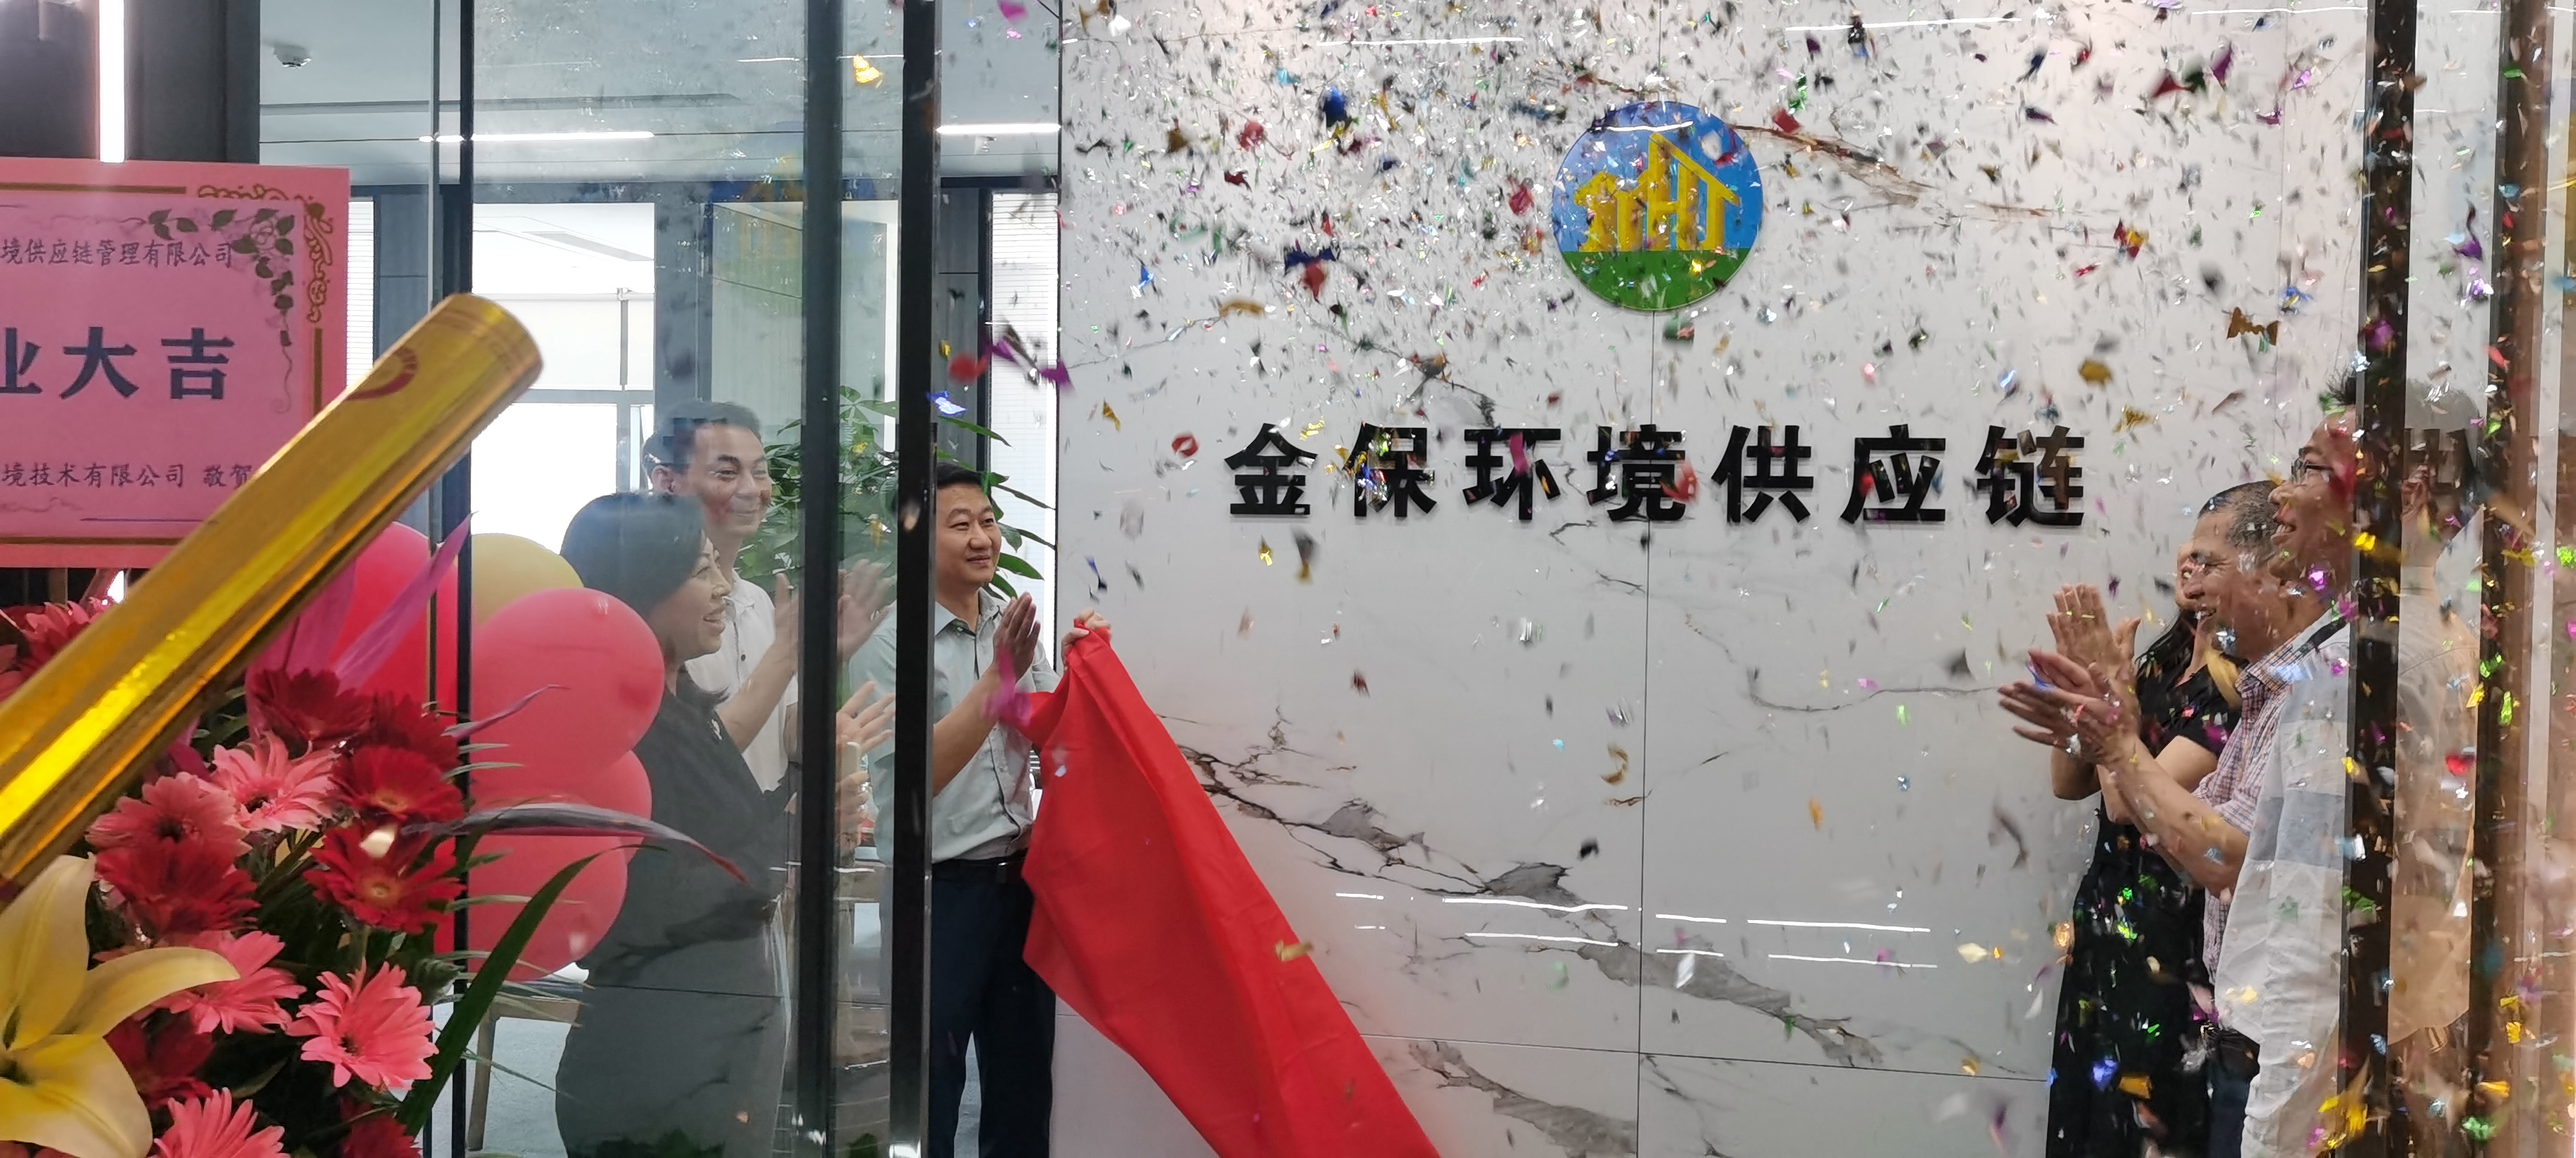 熱烈慶祝深圳金保環境供應鏈管理有限公司正式開業